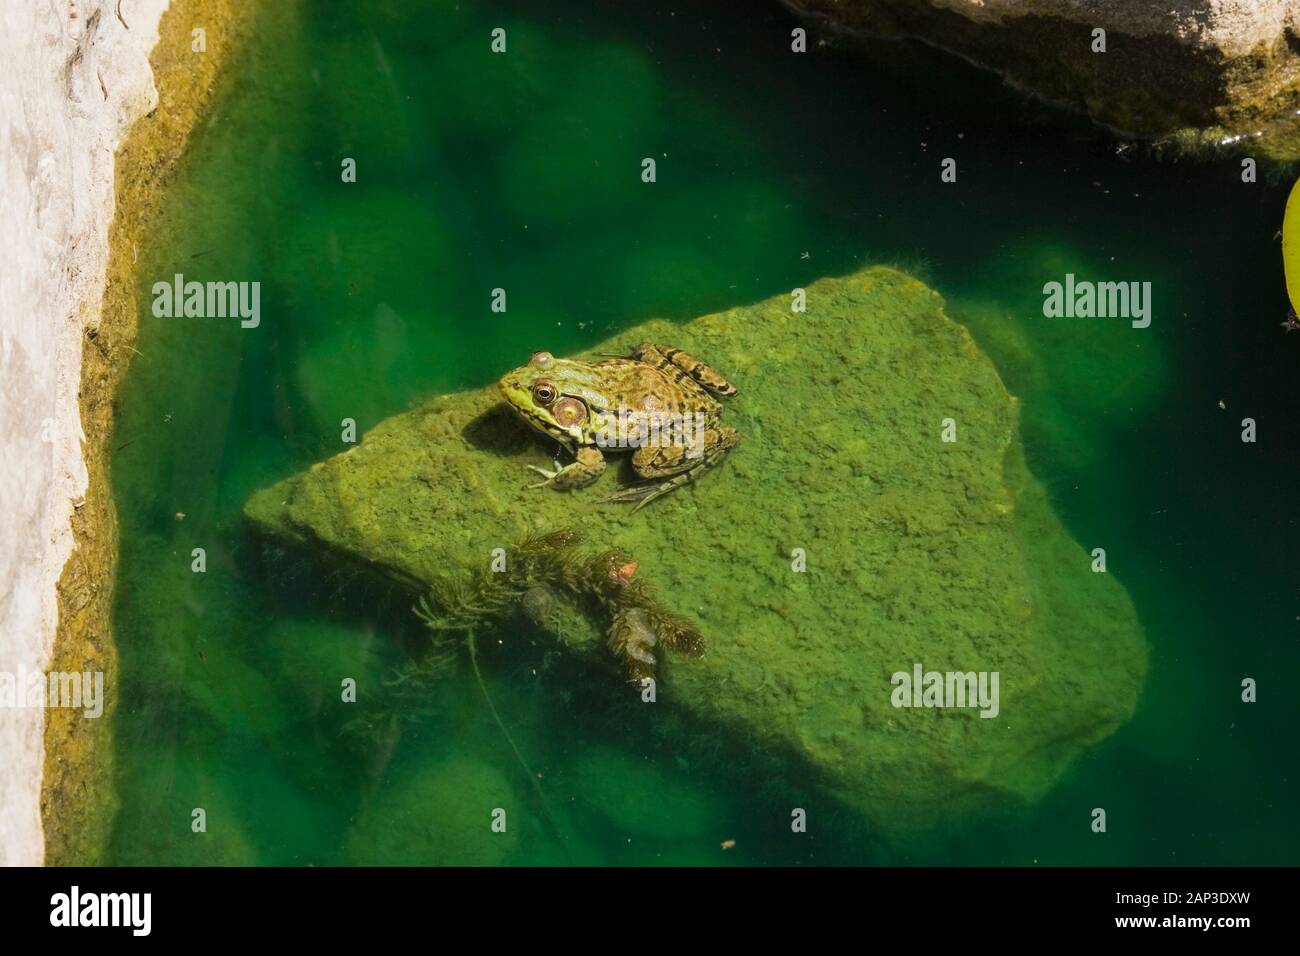 Primer plano de Rana clamitans - Rana verde descansando sobre un roca cubierta de Chlorophyta - Algae verde en un estanque a finales de la primavera Foto de stock